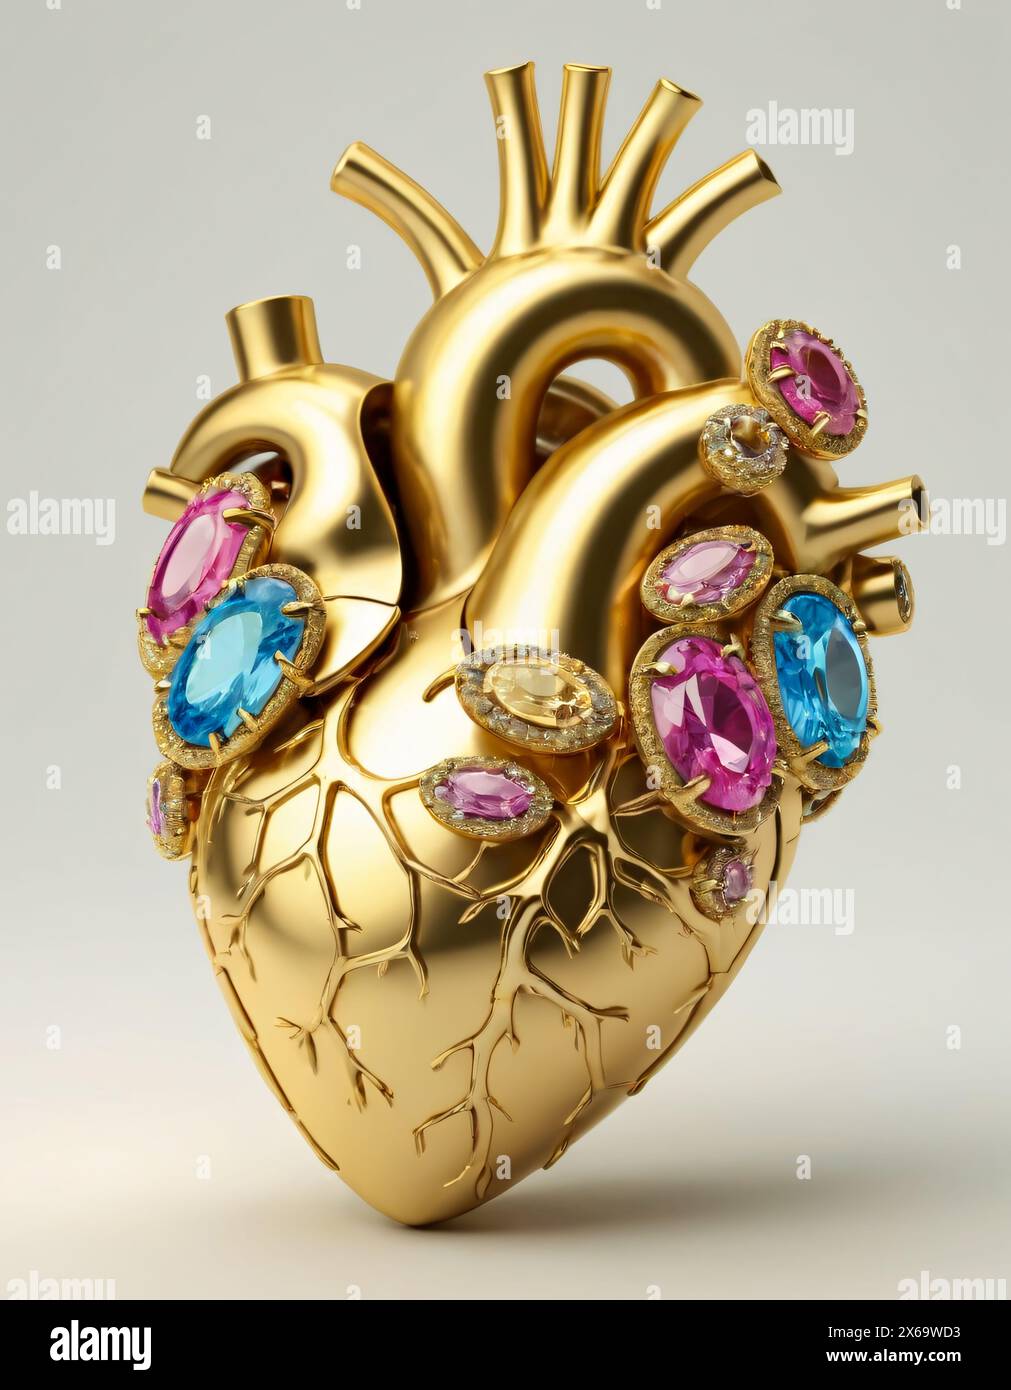 Menschliches Herz, realistische Darstellung. Goldkristall und Edelsteine. Stockfoto